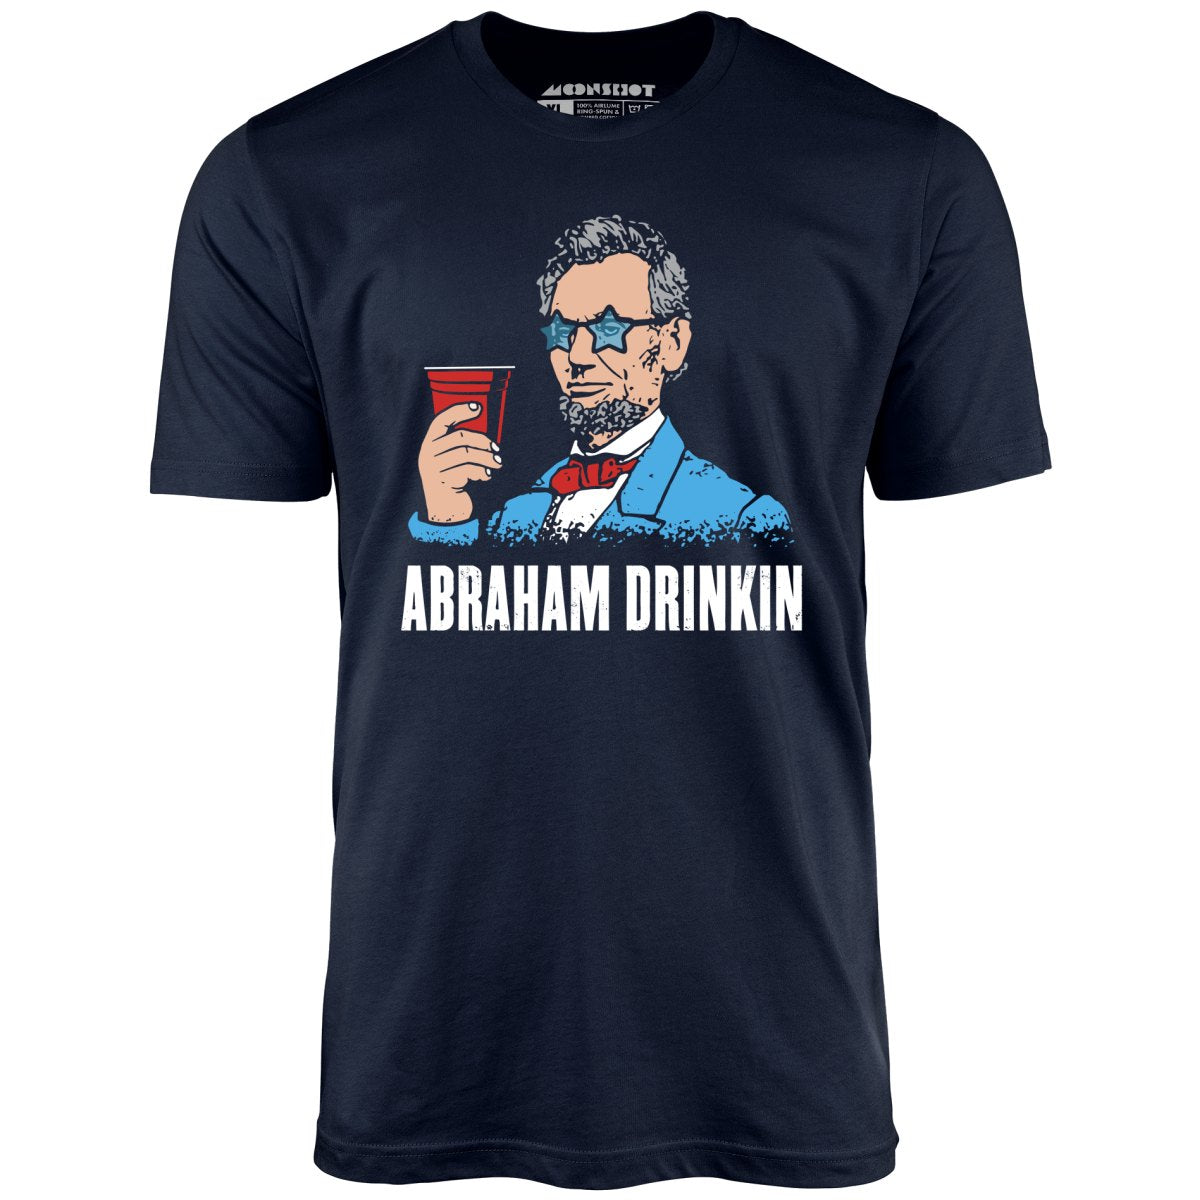 Abraham Drinkin - Unisex T-Shirt